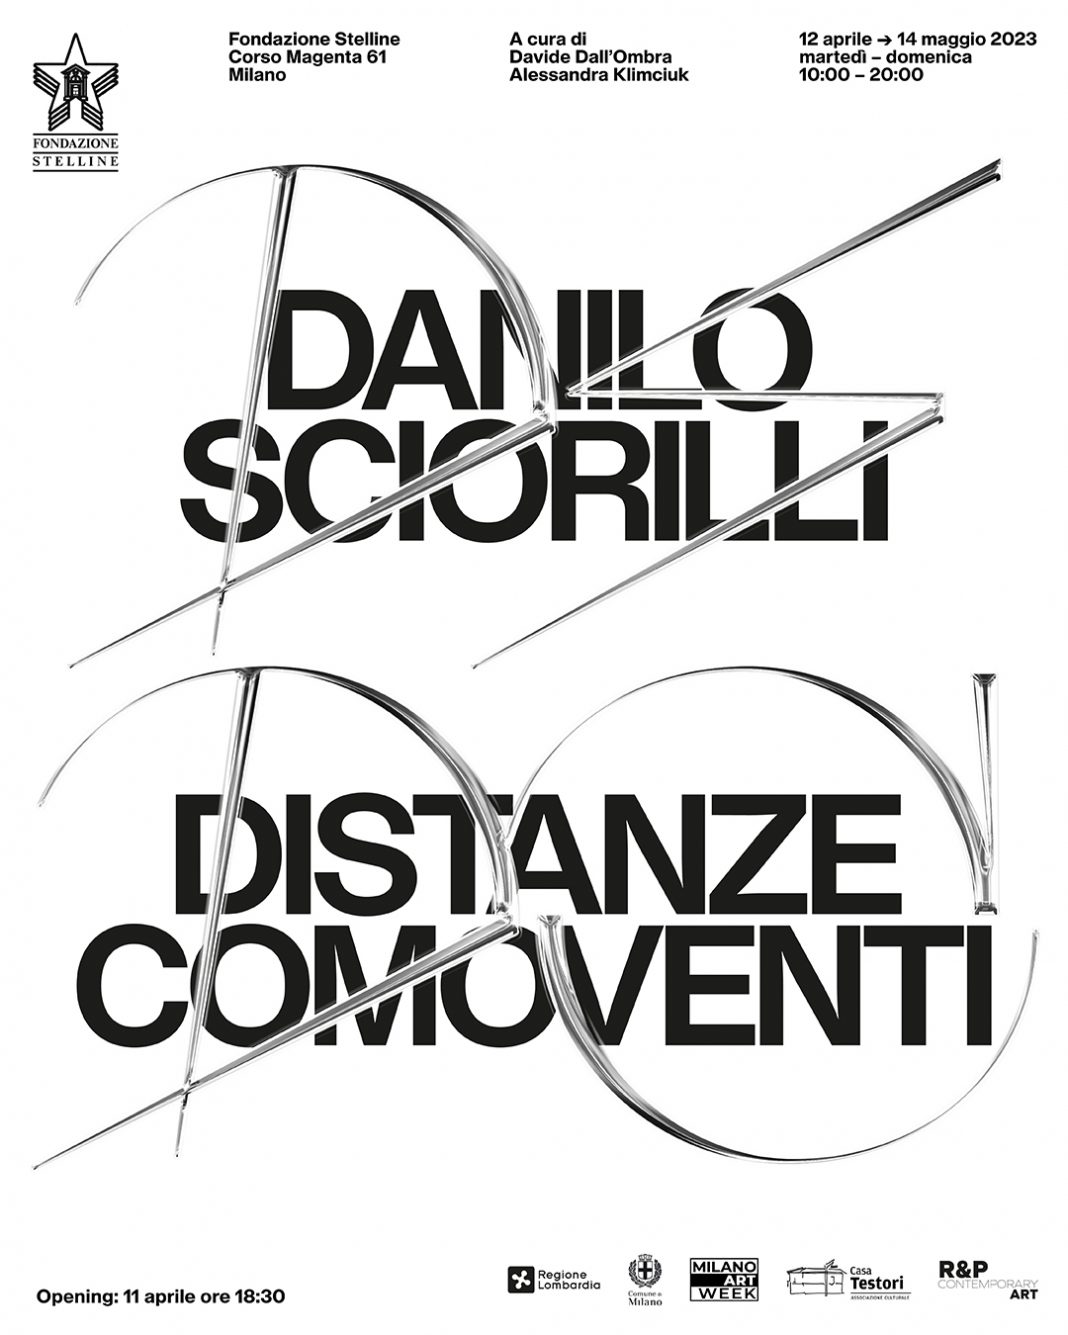 Danilo Sciorilli – Distanze Comoventihttps://www.exibart.com/repository/media/formidable/11/img/a0e/Post-1080x1350-Copia-1068x1335.jpg